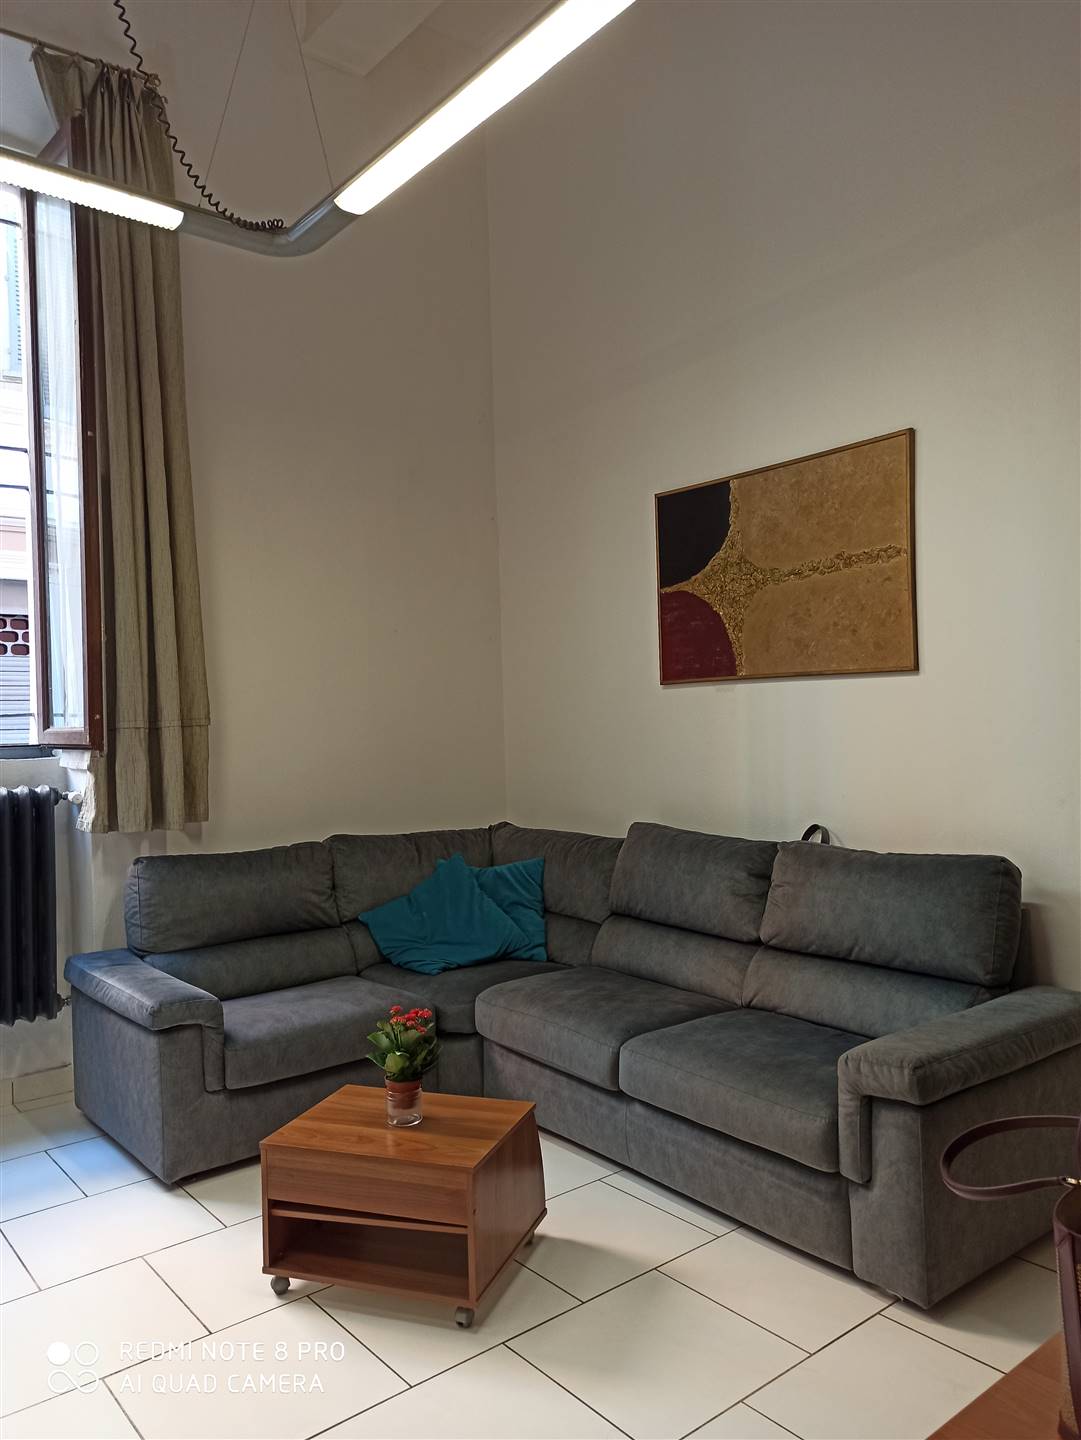 Appartamento in affitto a Novara, 2 locali, zona Località: CENTRO STORICO, prezzo € 450 | CambioCasa.it